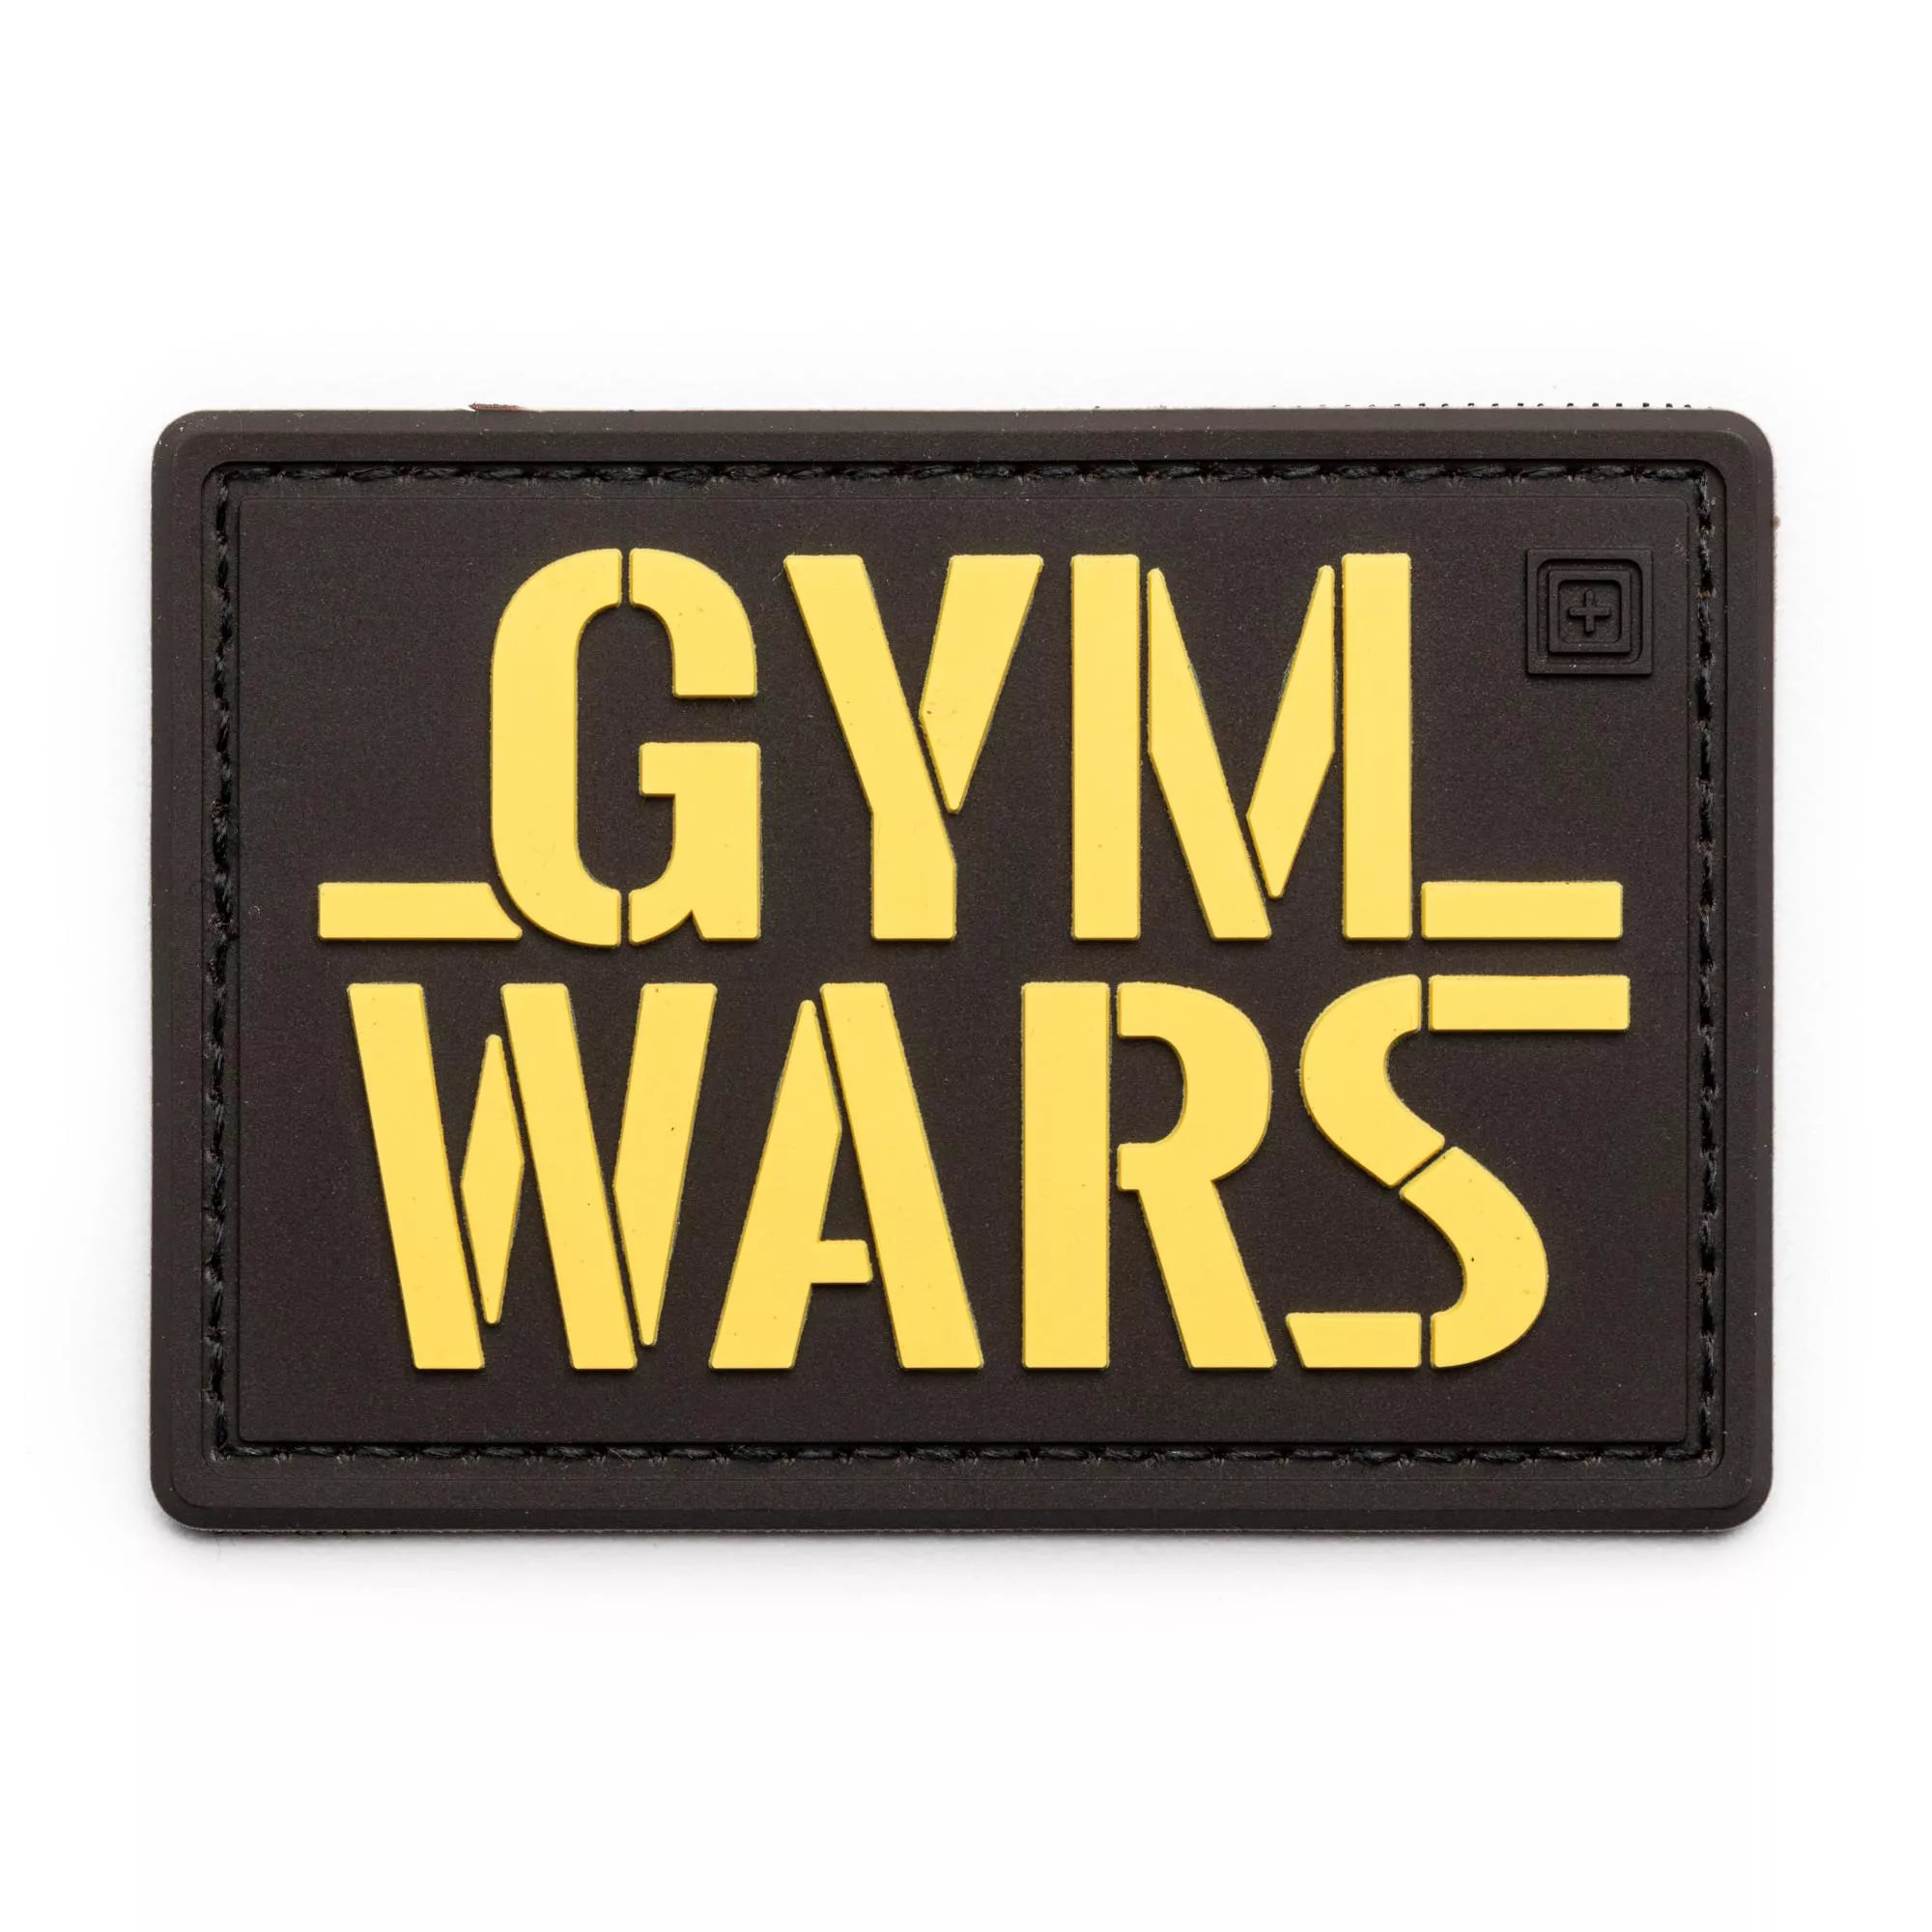 5.11-Gym Wars Patch 貼章 #81979